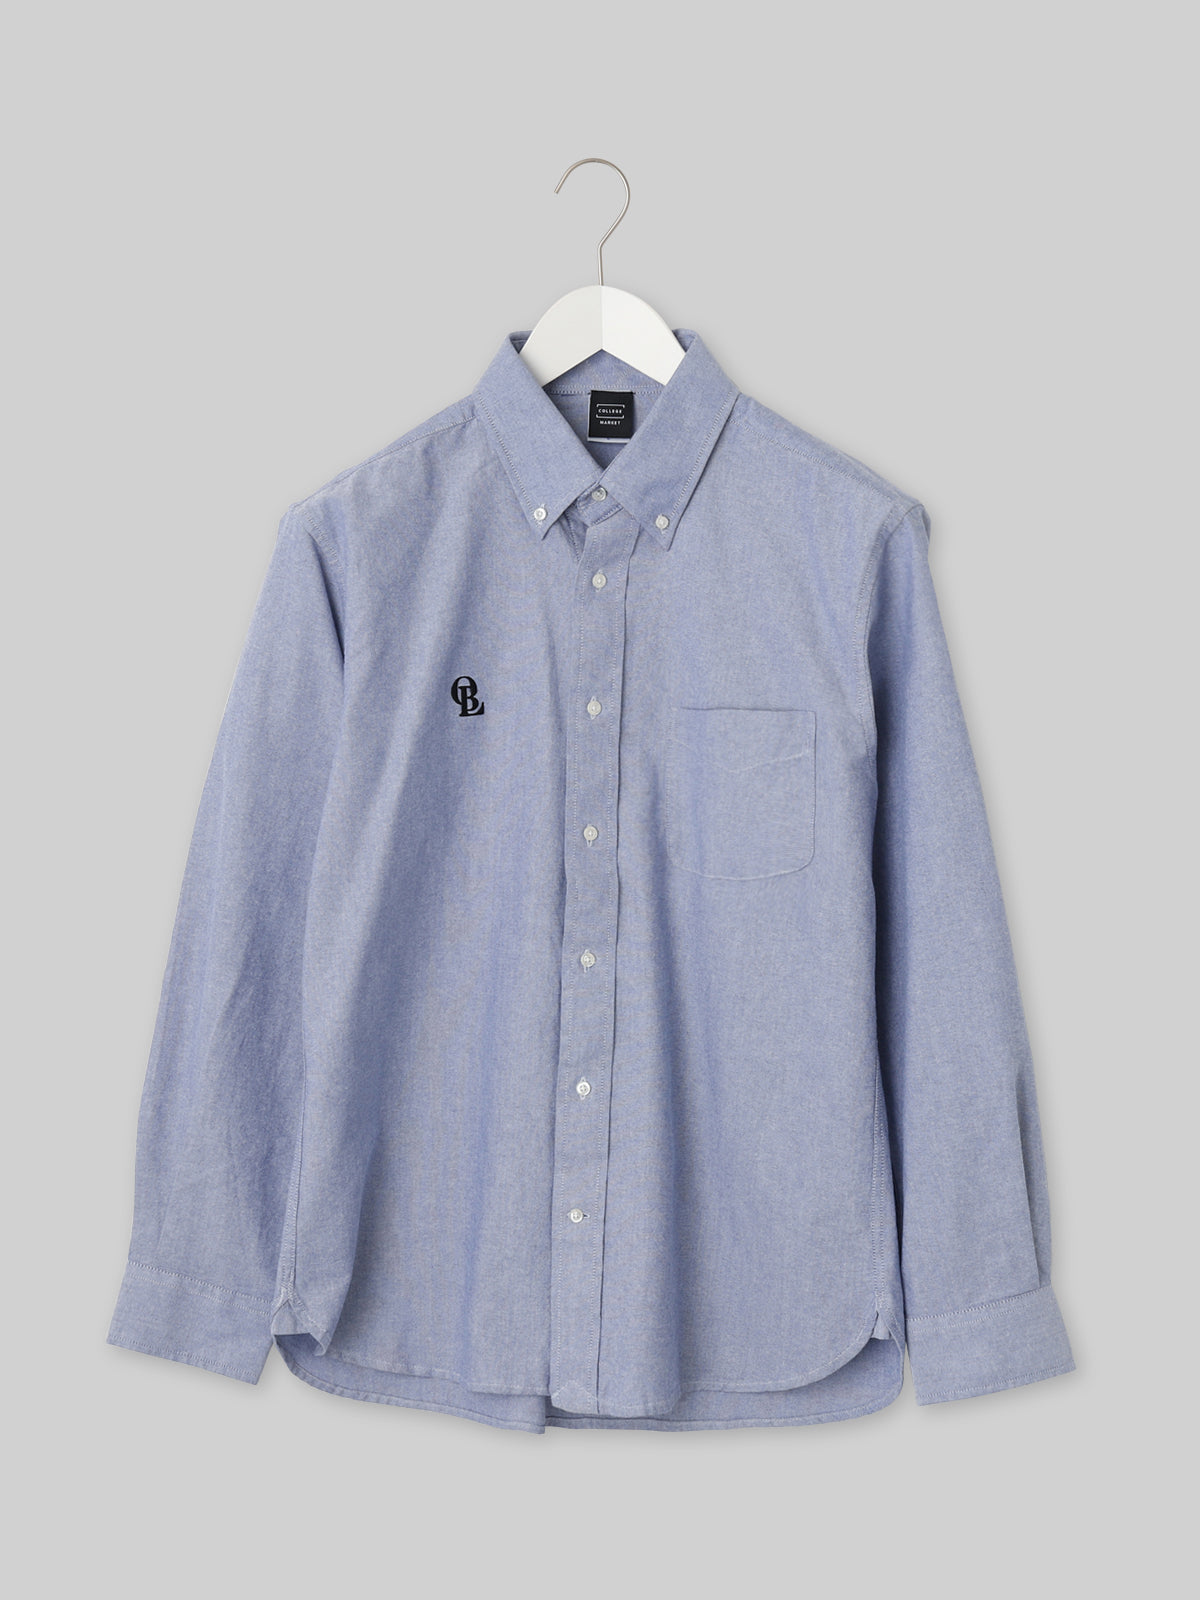 J. F. OBERLIN オックスフォードボタンダウンシャツ OBLロゴ ブルー